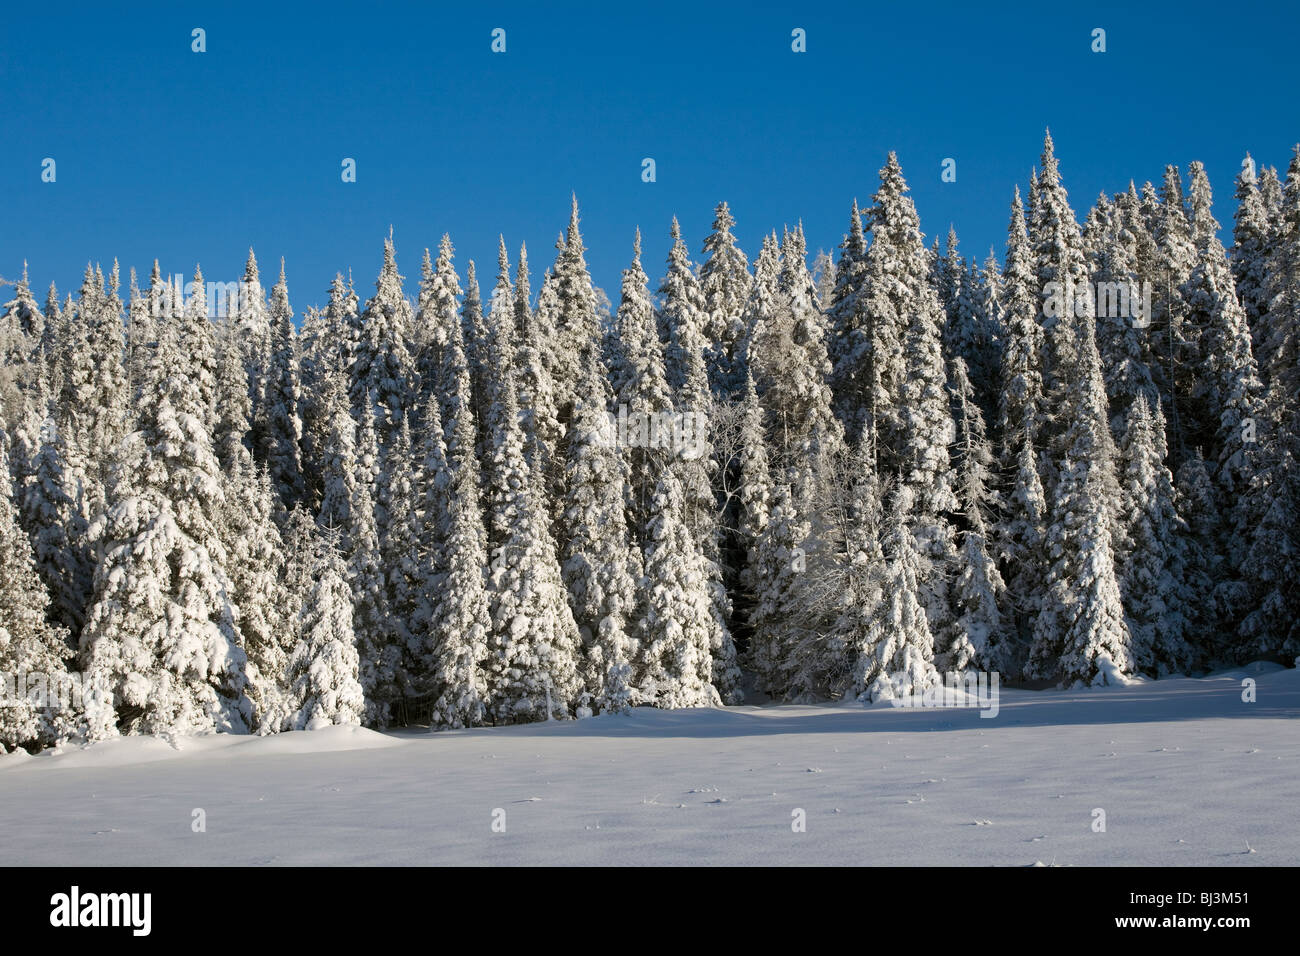 La forêt enneigée en hiver, Canada Banque D'Images